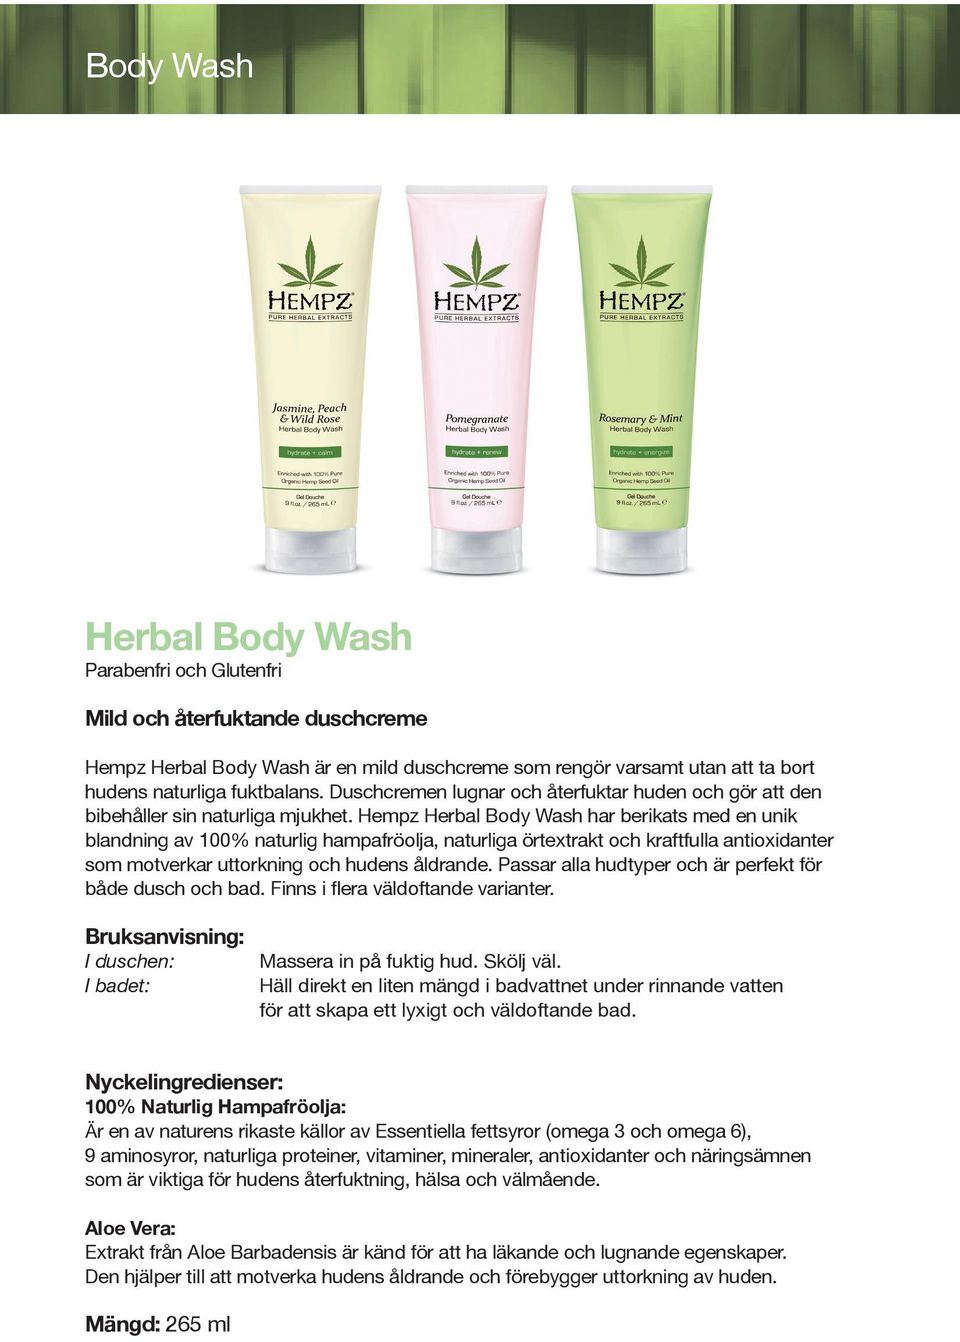 Hempz Herbal Body Wash har berikats med en unik blandning av 100% naturlig hampafröolja, naturliga örtextrakt och kraftfulla antioxidanter som motverkar uttorkning och hudens åldrande.